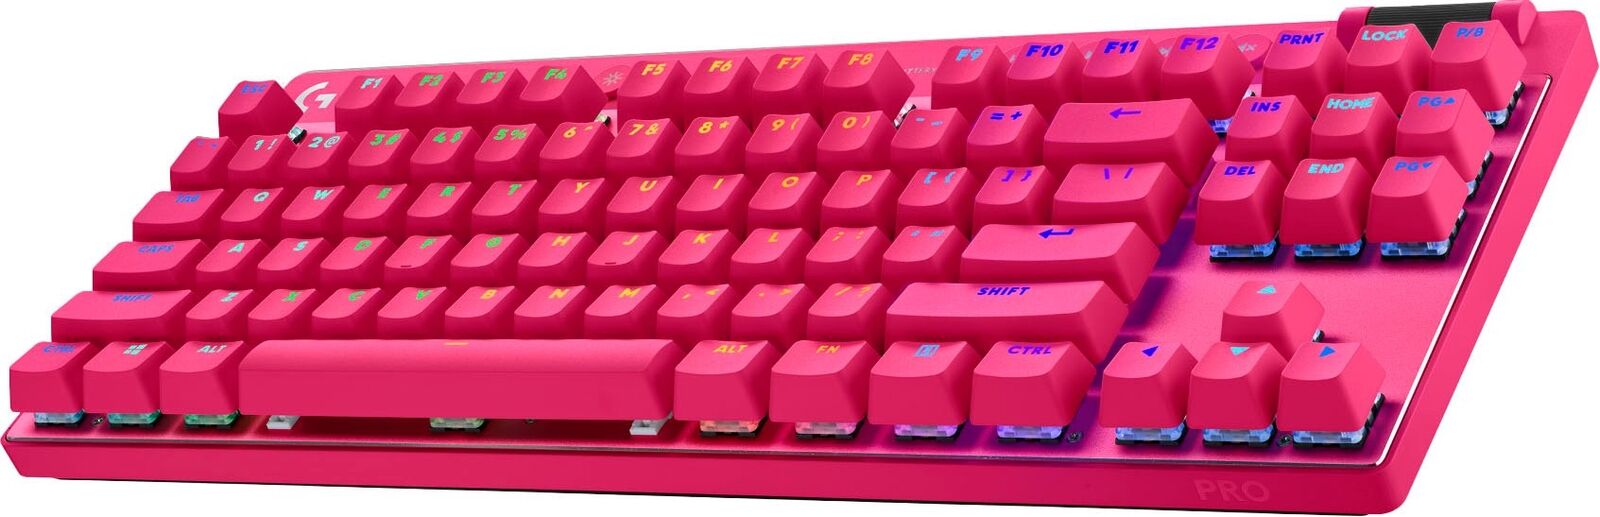 Logitech G Pro X TKL Mechanical Gaming Keyboard GX Brown Tactile (Renewed)